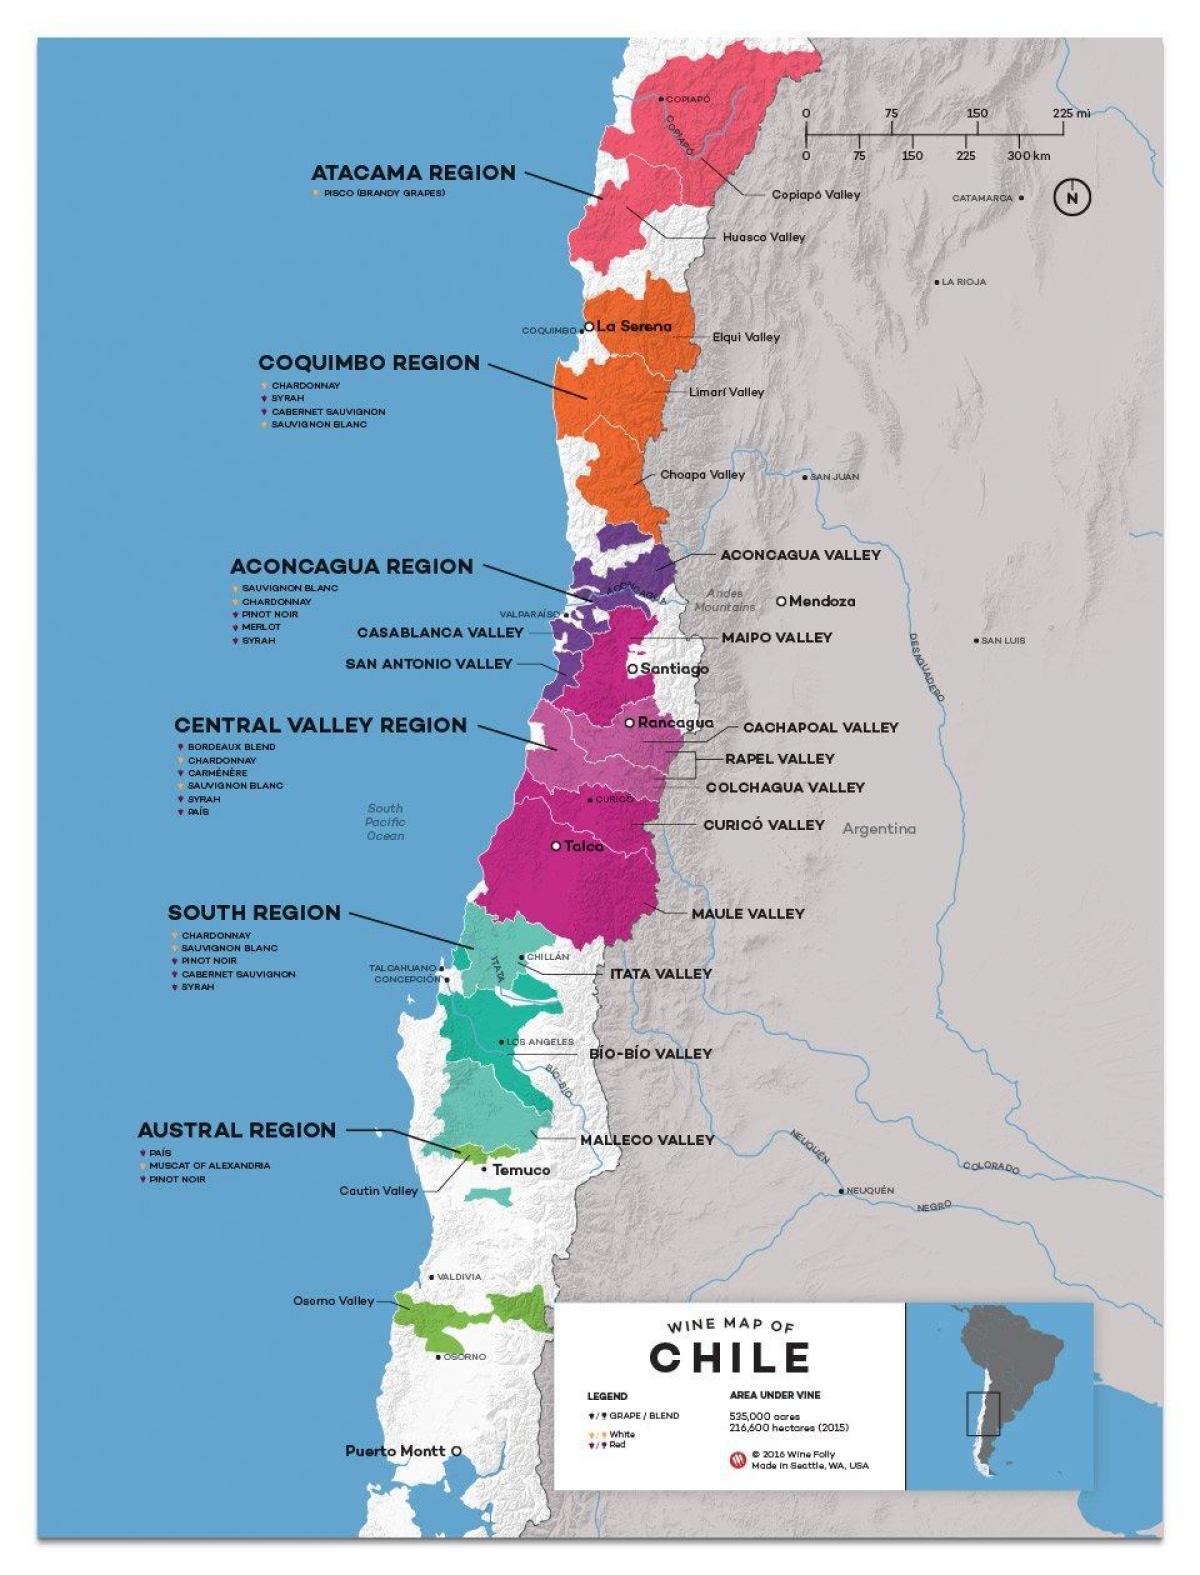 Chili, pays de vin de la carte